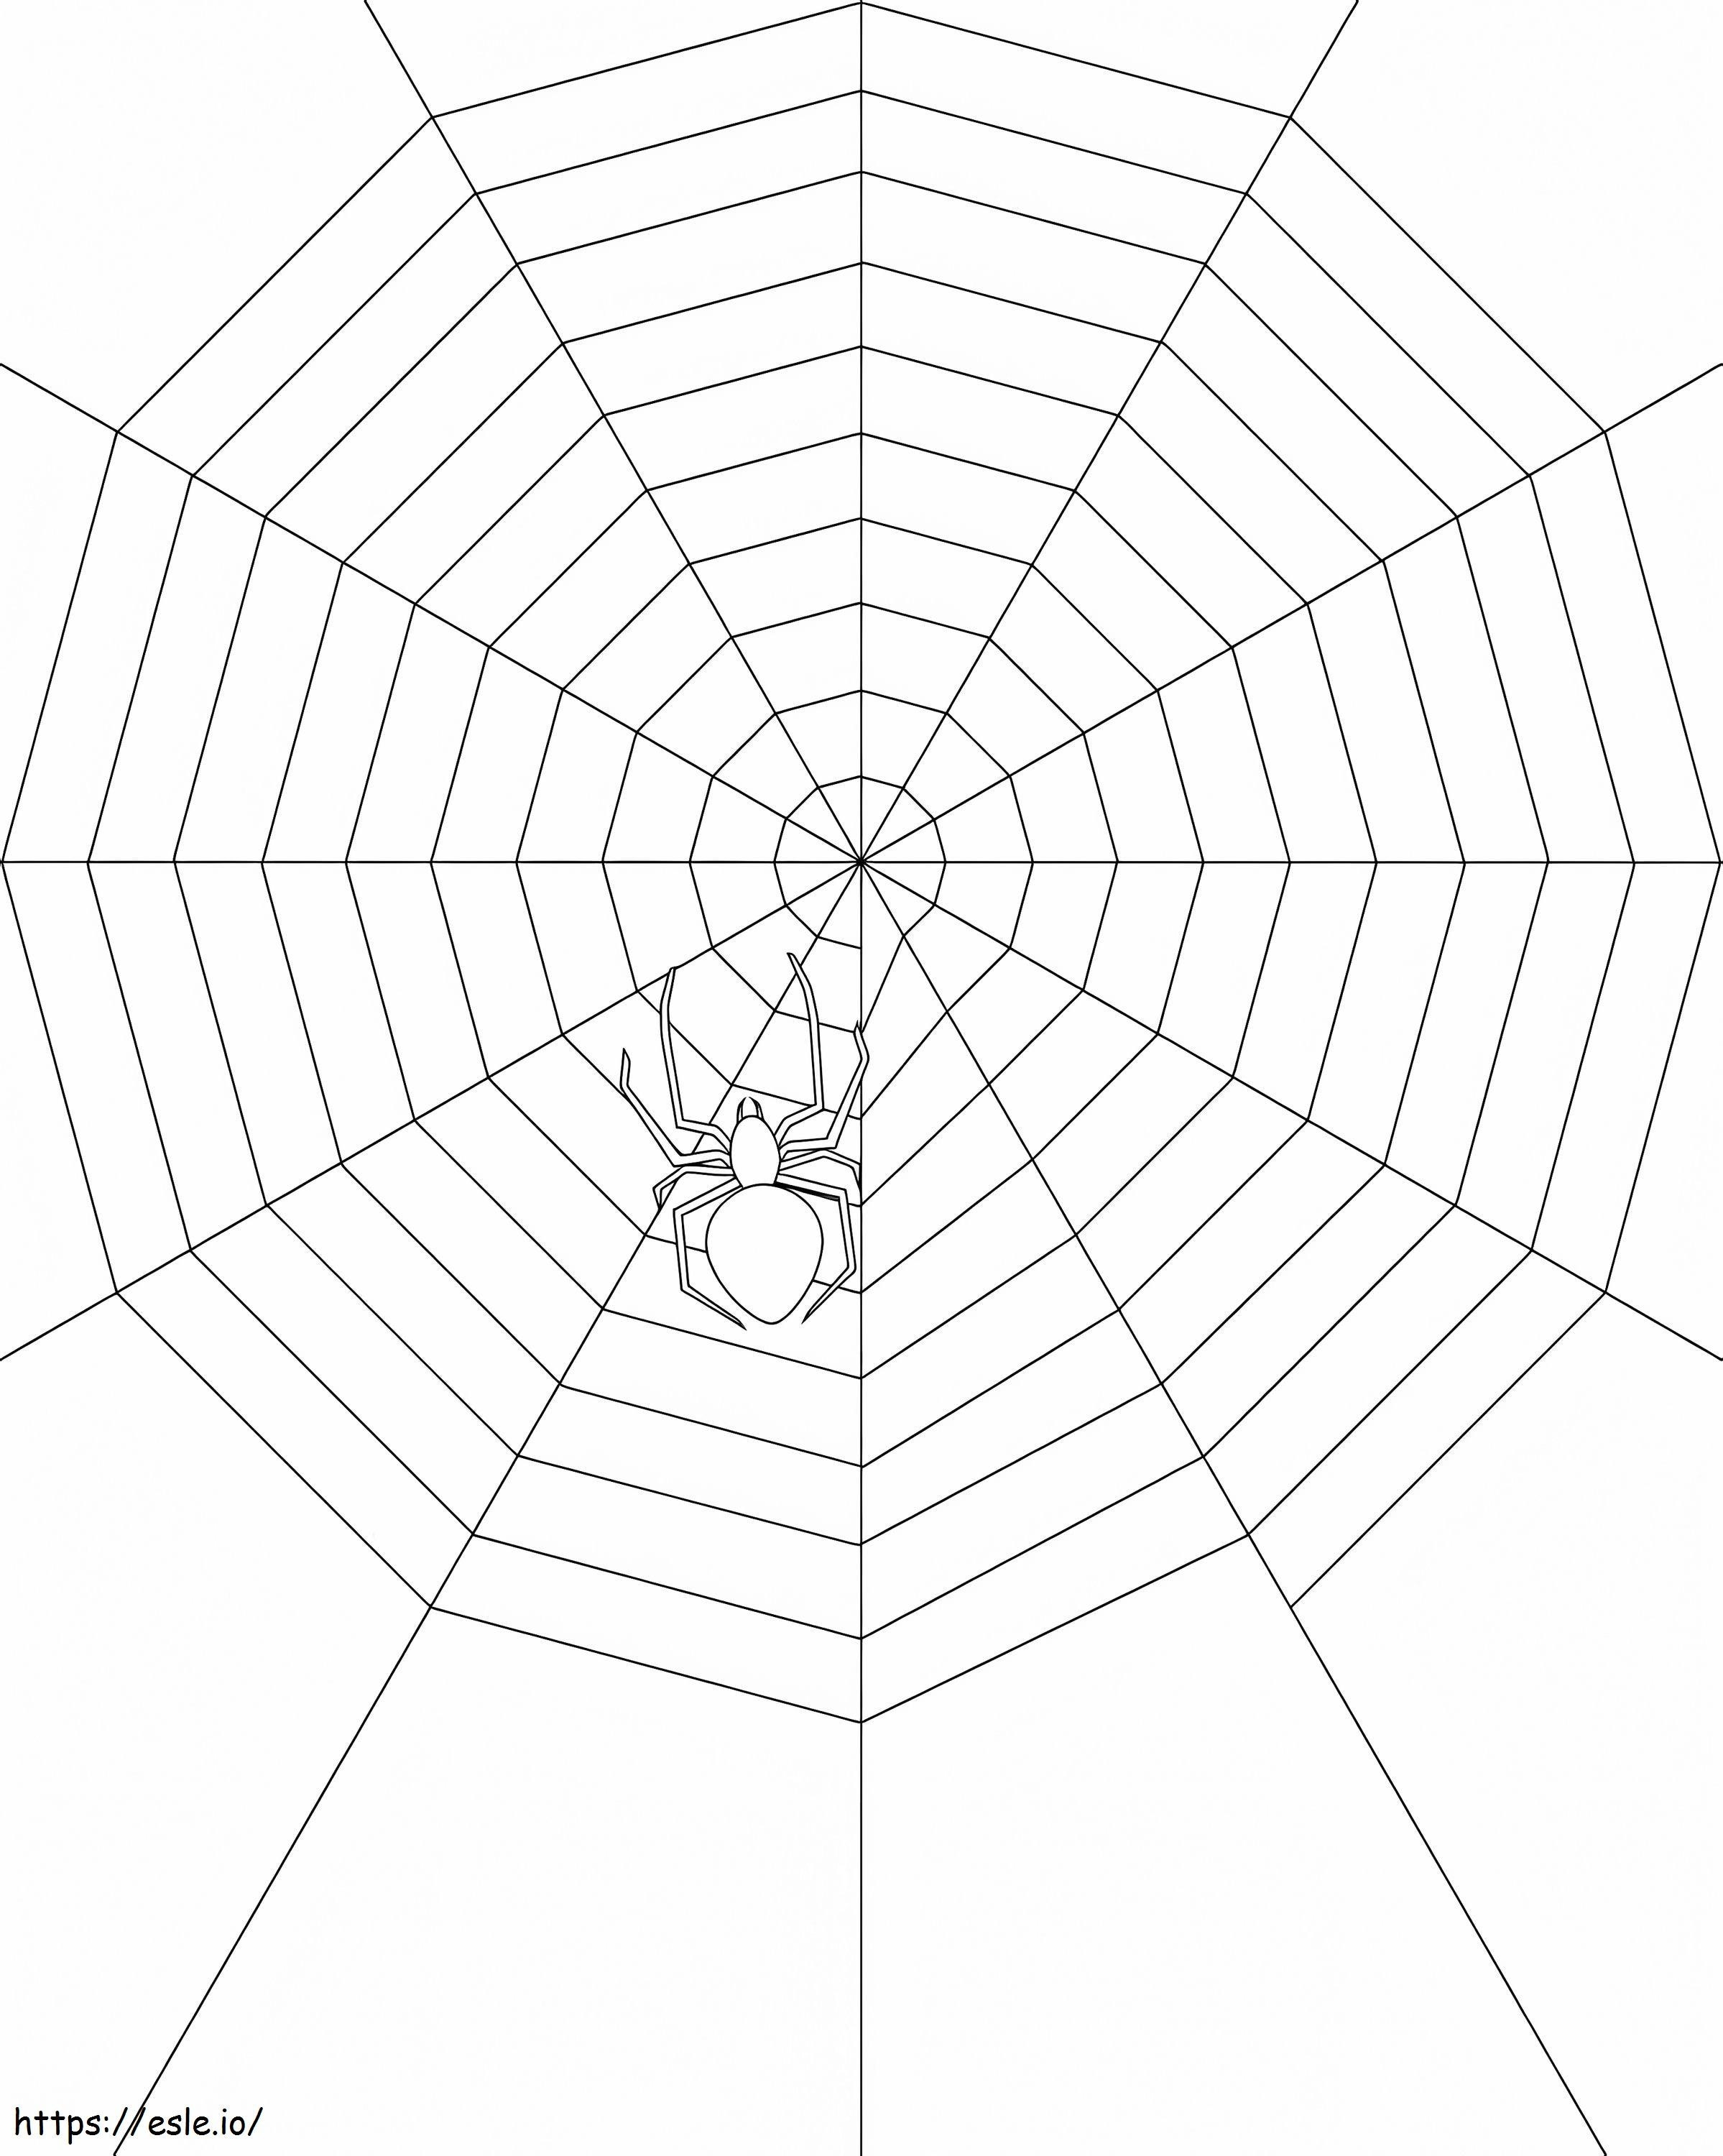 Spinne im Spinnennetz 1 ausmalbilder